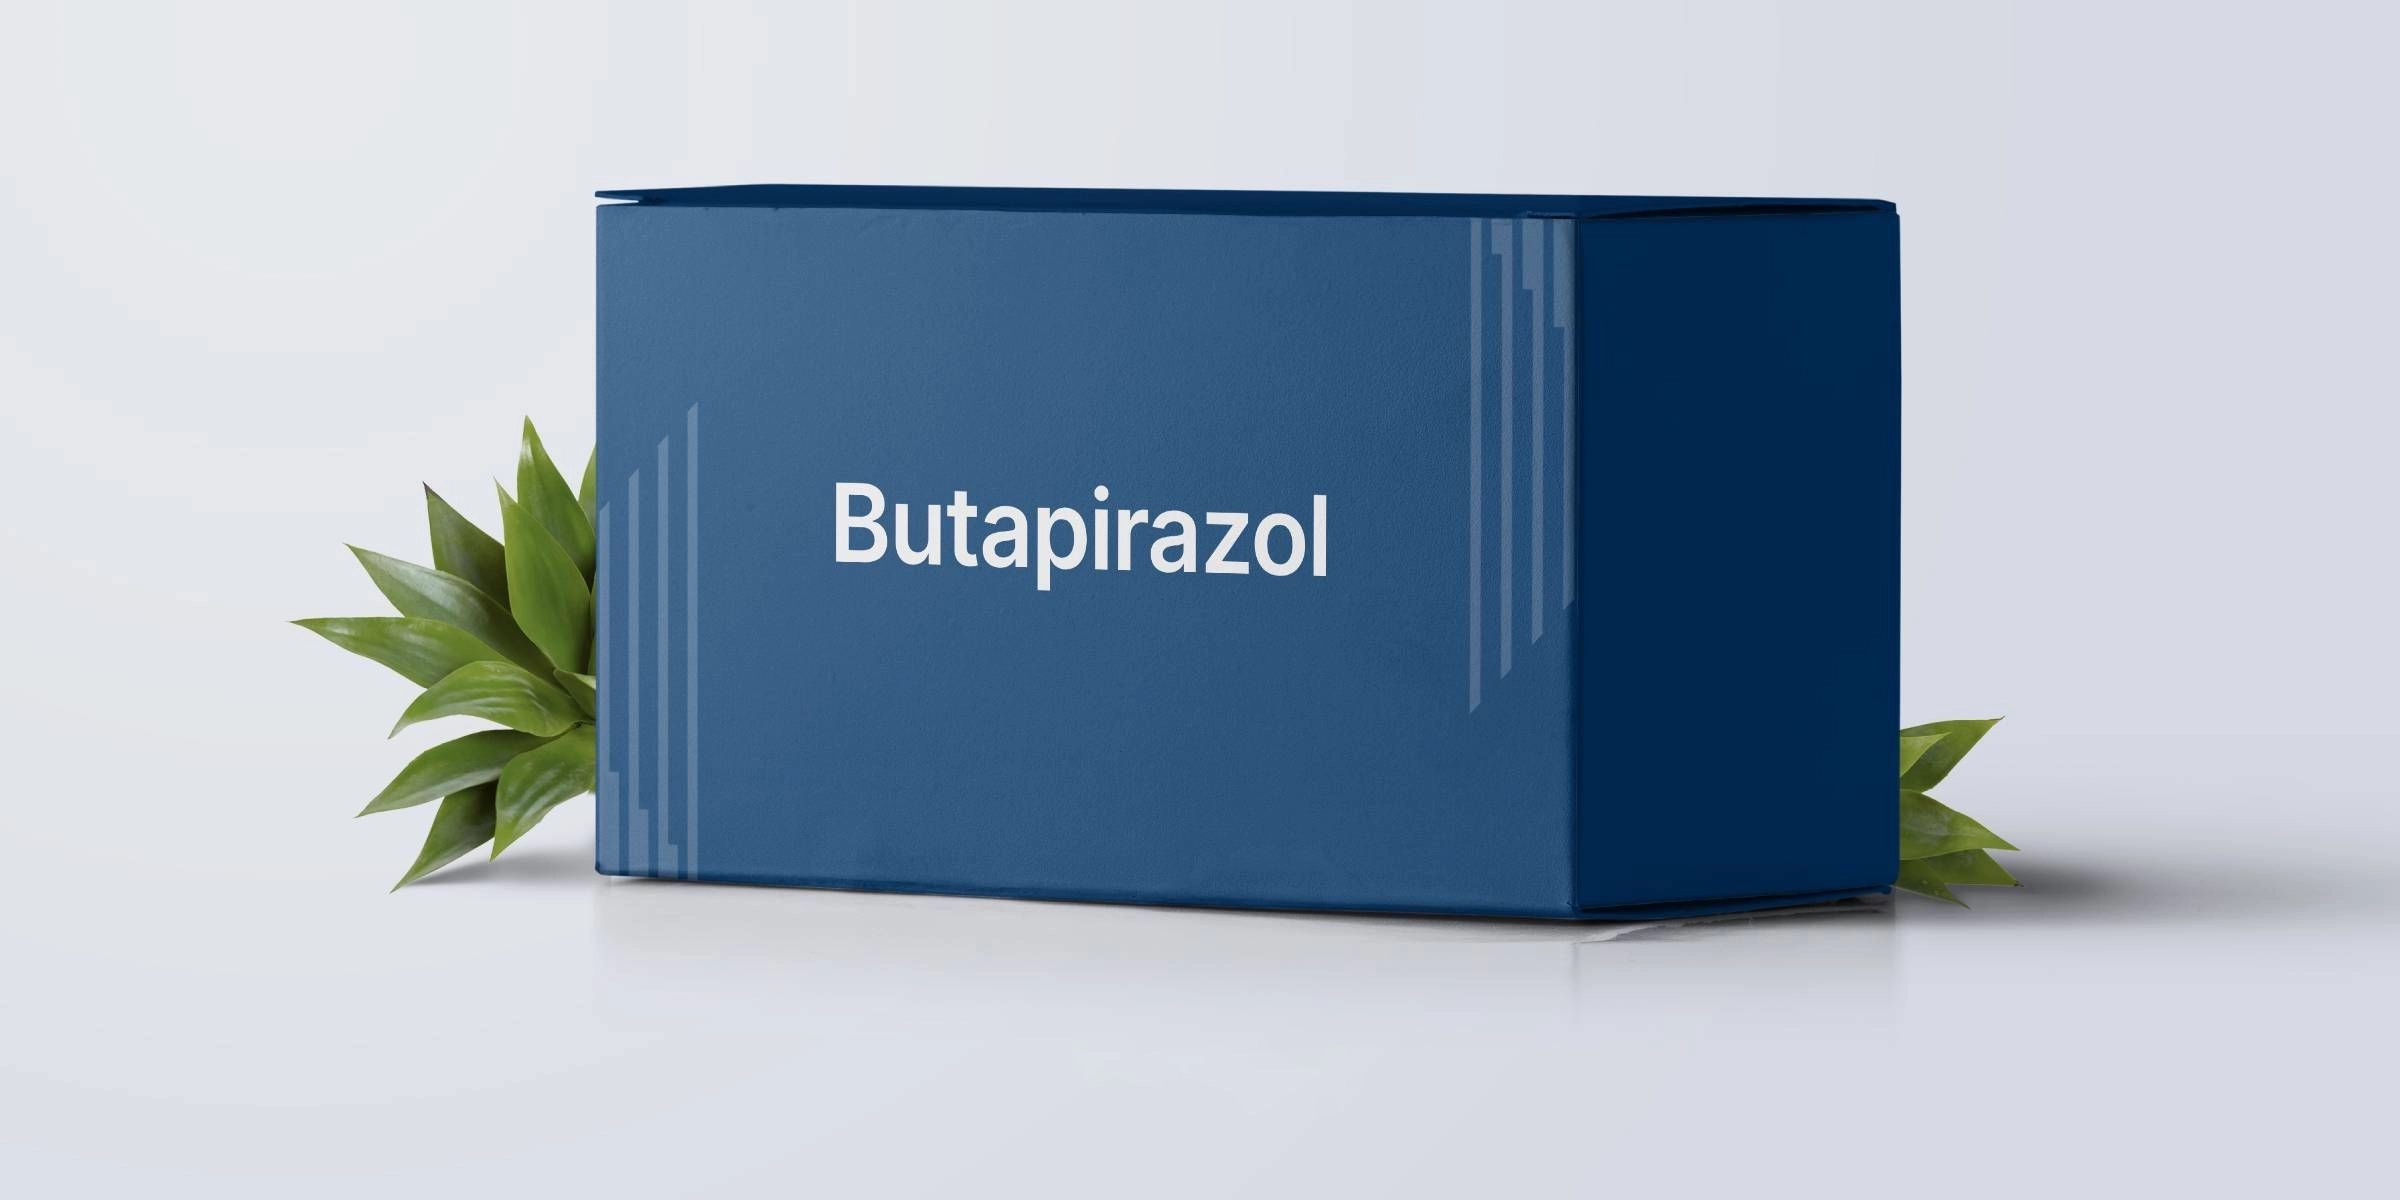 Butapirazol E recepta  recepta online z konsultacją | cena  dawkowanie  przeciwwskazania